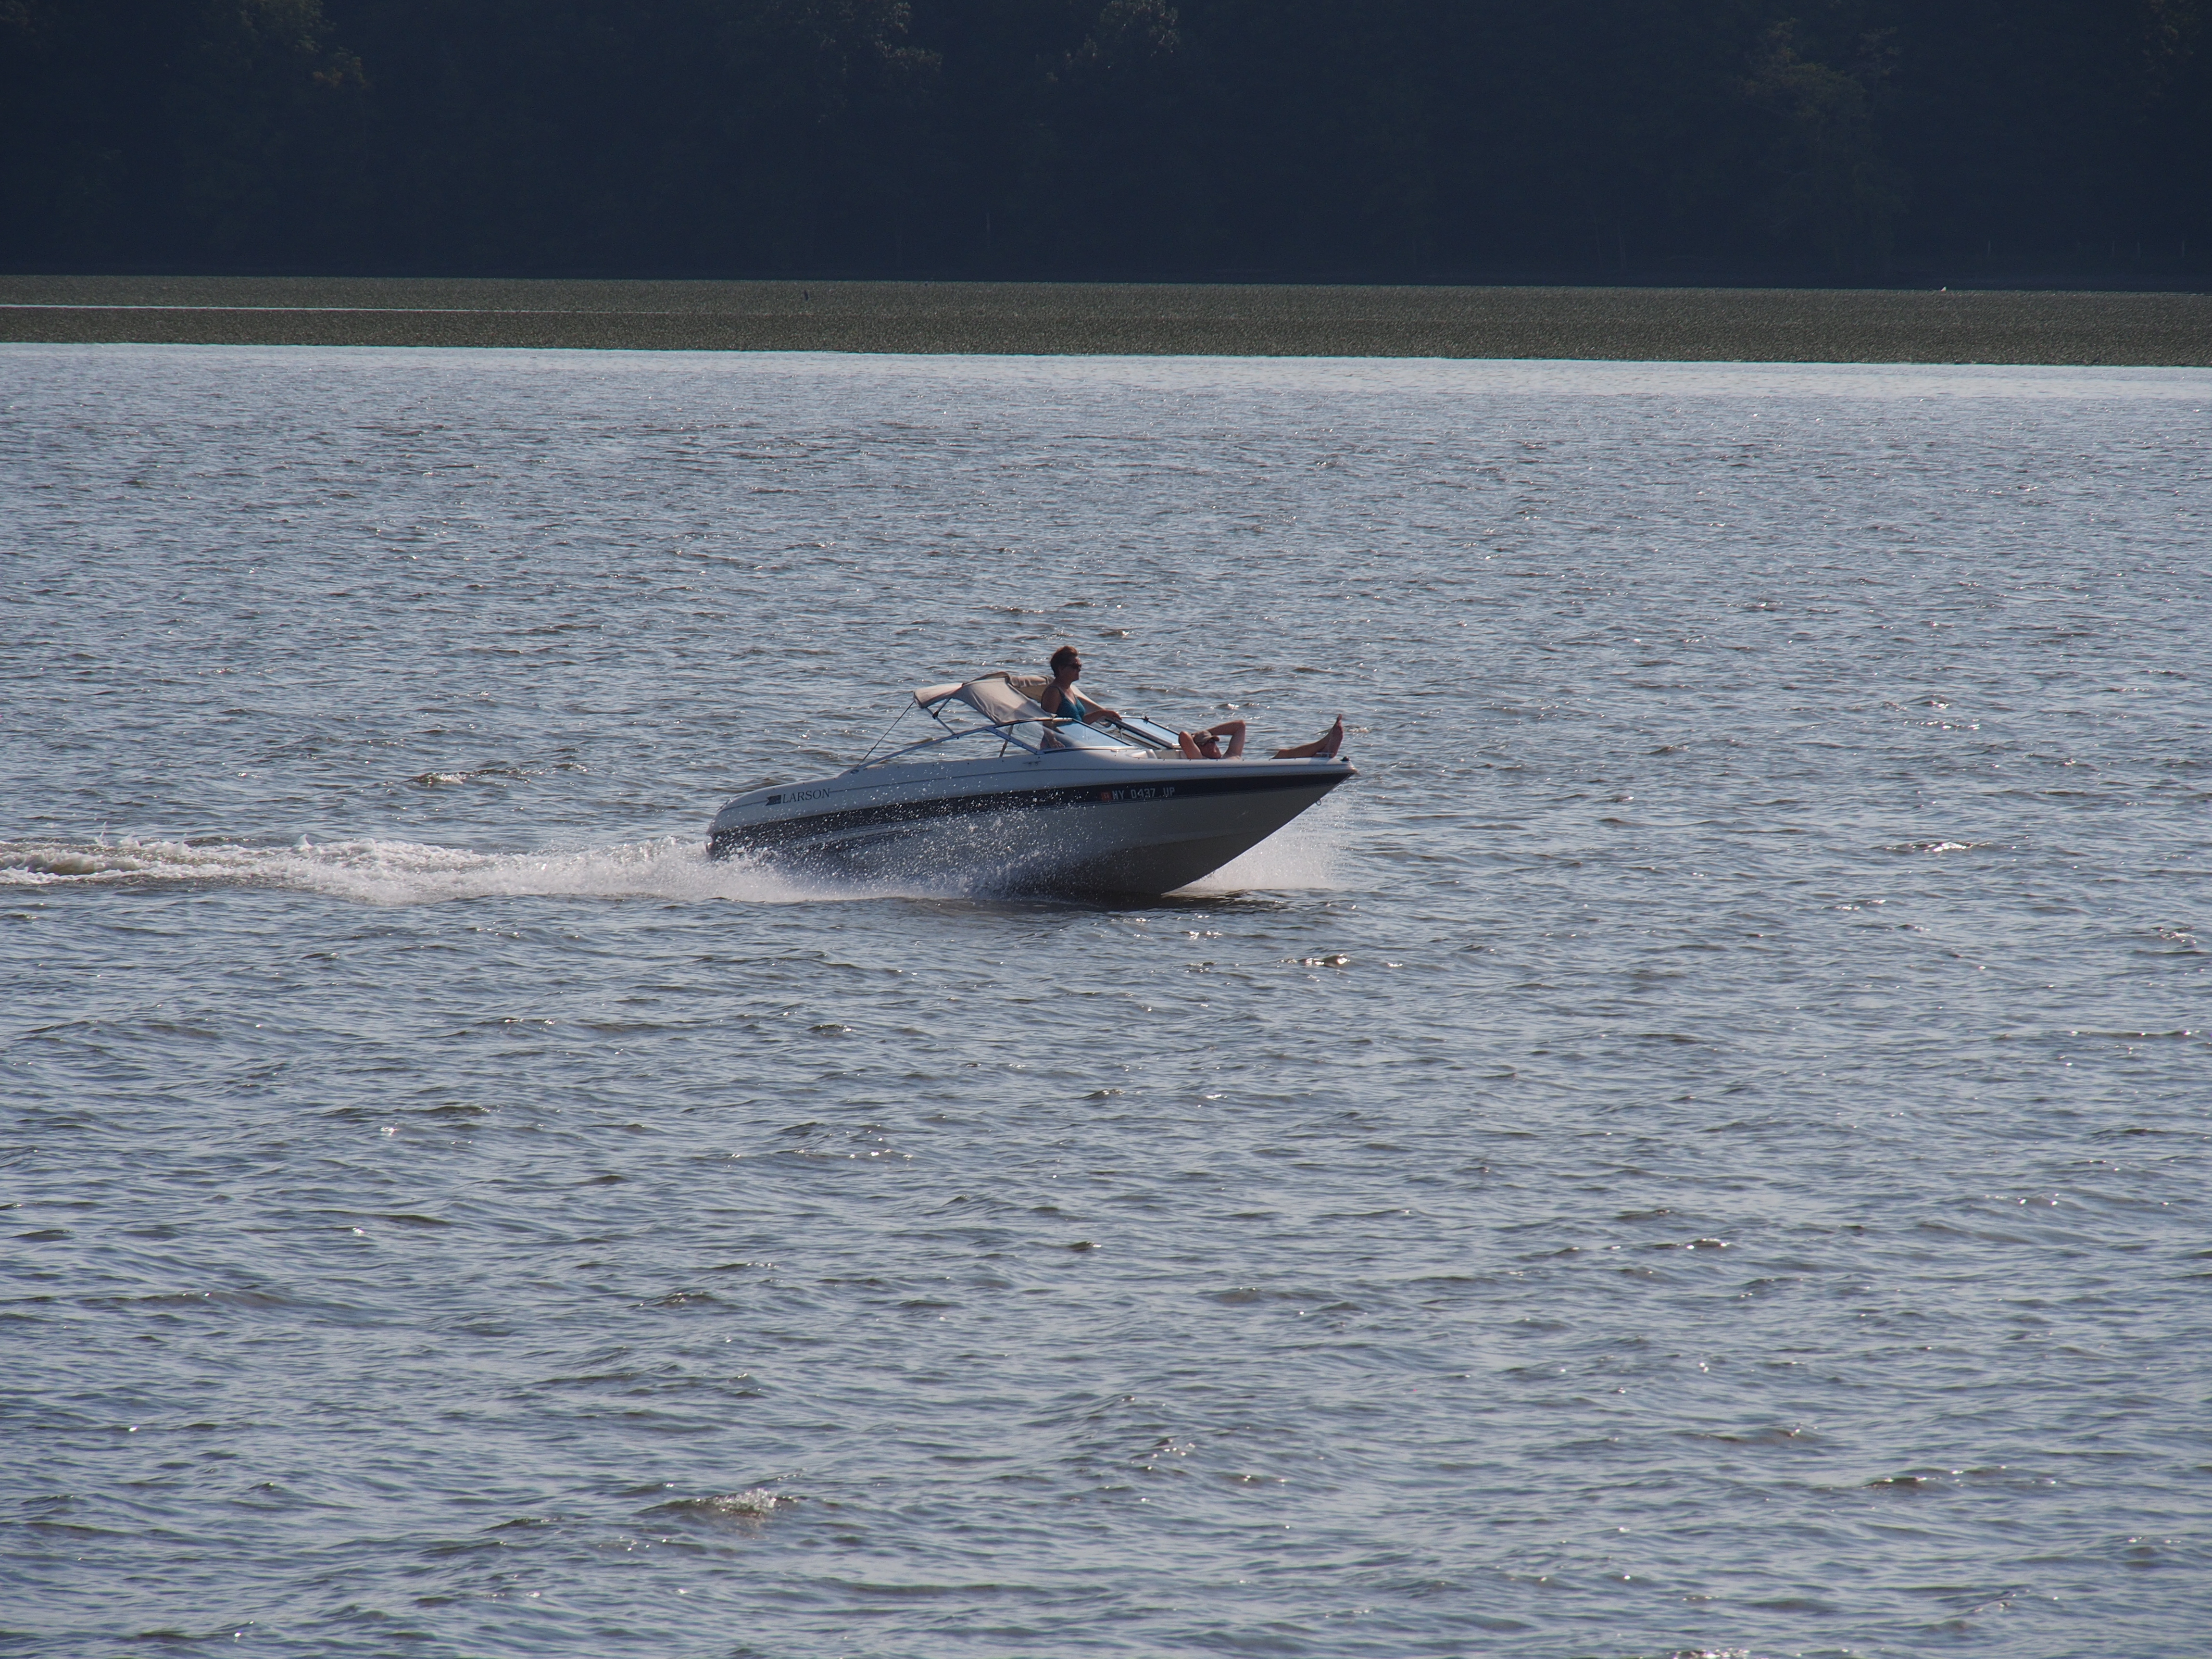 Speedboat #2